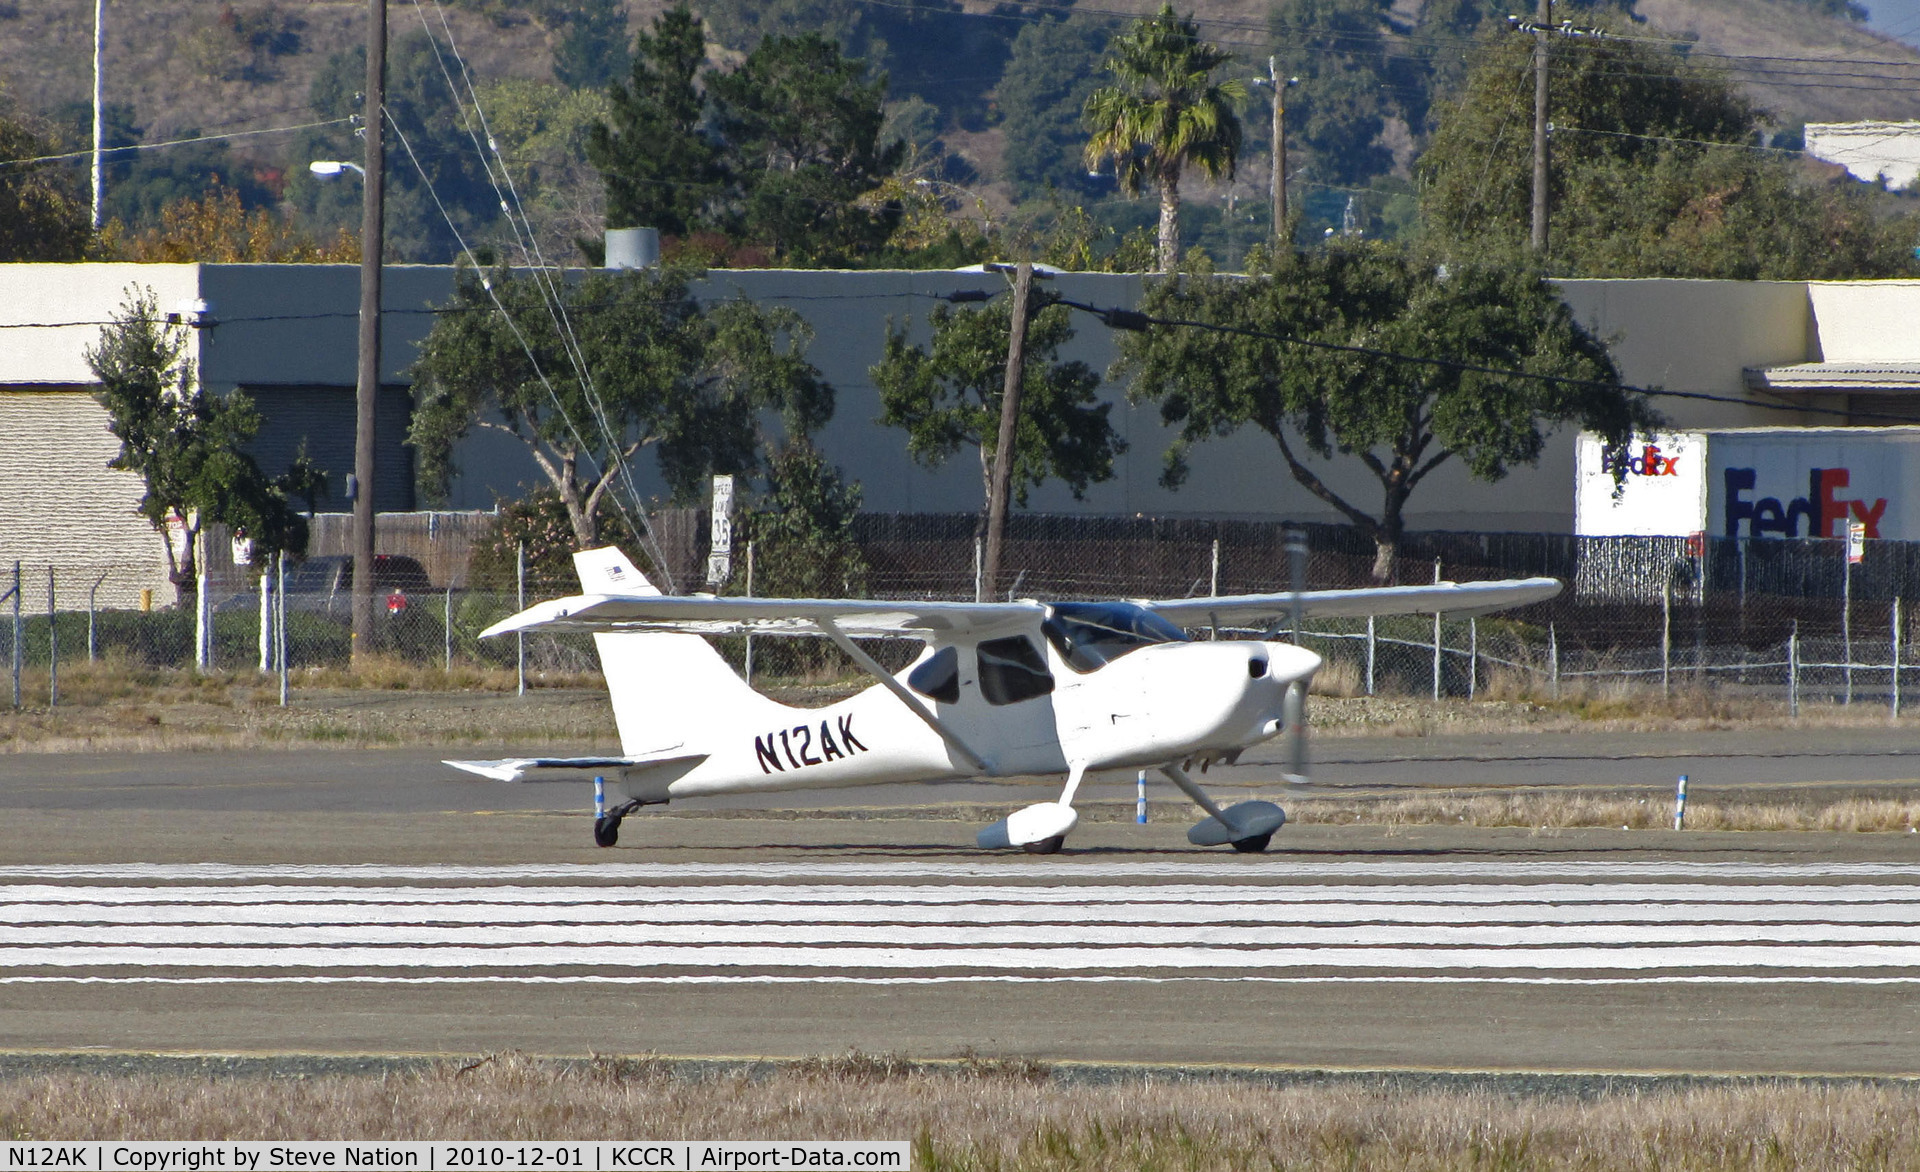 N12AK, 2002 Stoddard-Hamilton GlaStar GS-1 C/N 5695, Locally-based 2002 Wiley GS-1 GLASTAR experimental homebuilt running up for take-off on RWY 1L @ Buchanan Field, Concord, CA